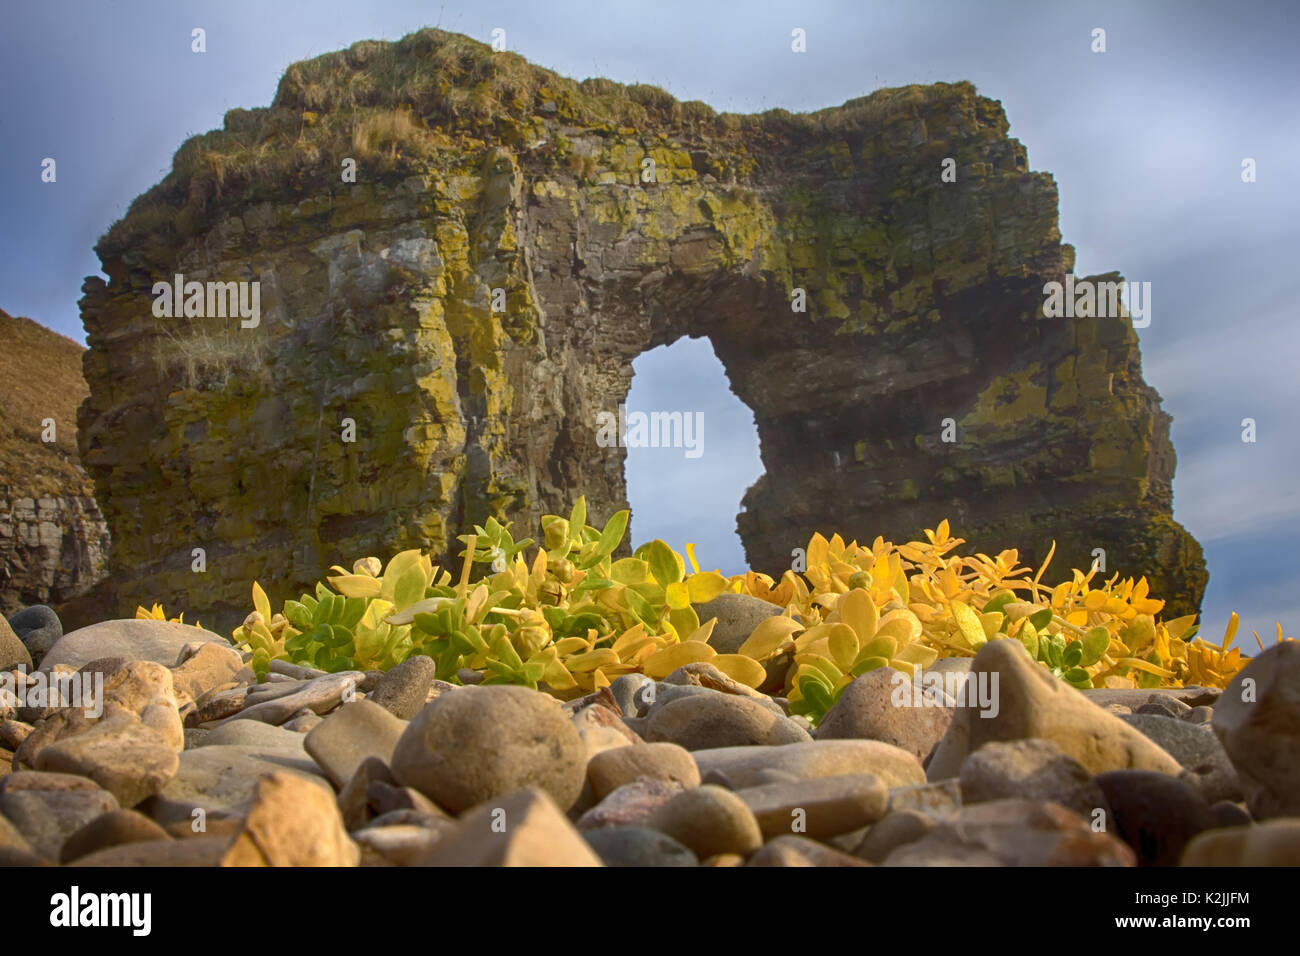 Arco de Steller (en honor del zoólogo Georg Steller). Arco de piedra maciza en la costa del océano Pacífico. La isla de Bering. Islas Commander formaciones rocosas, Foto de stock